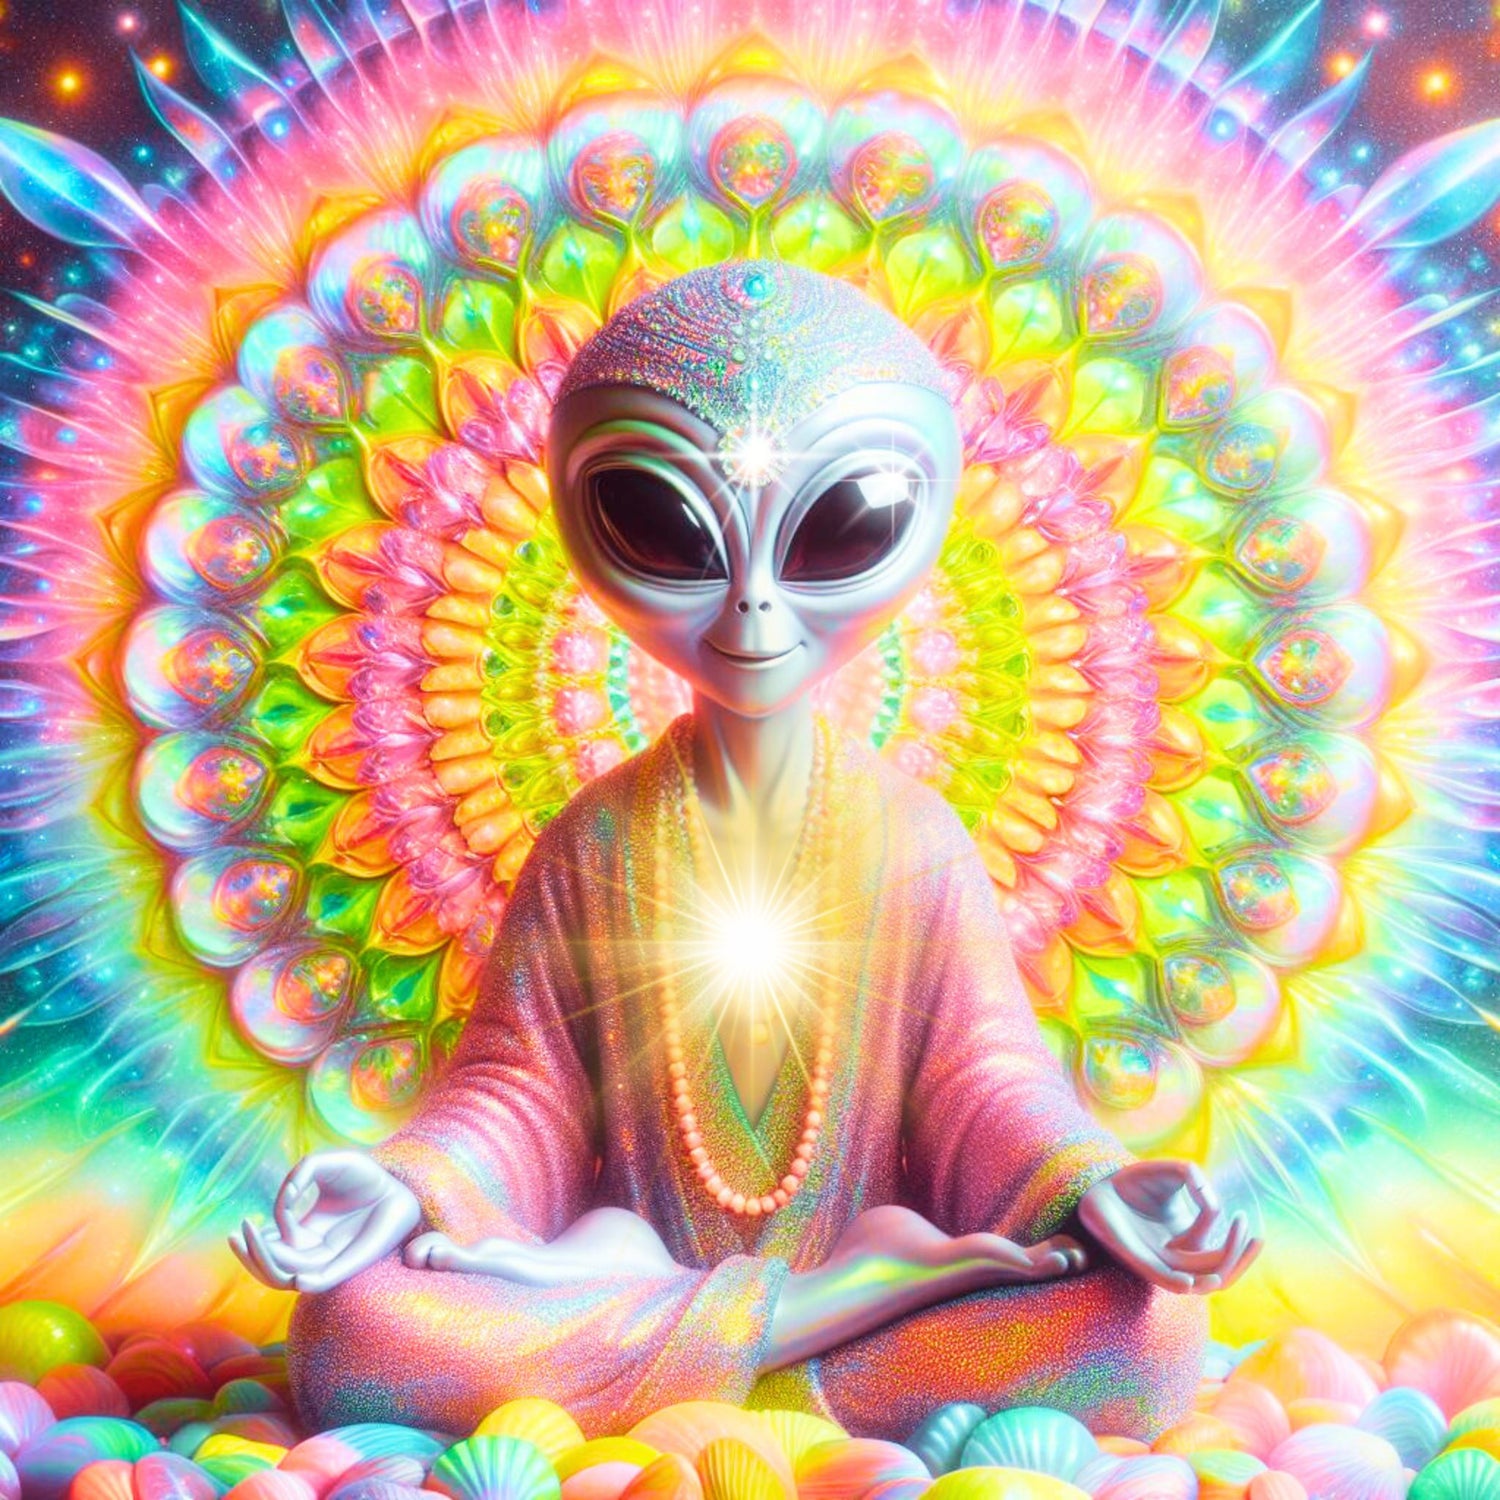 Alien vor einem regenbogenfarbenen mandala